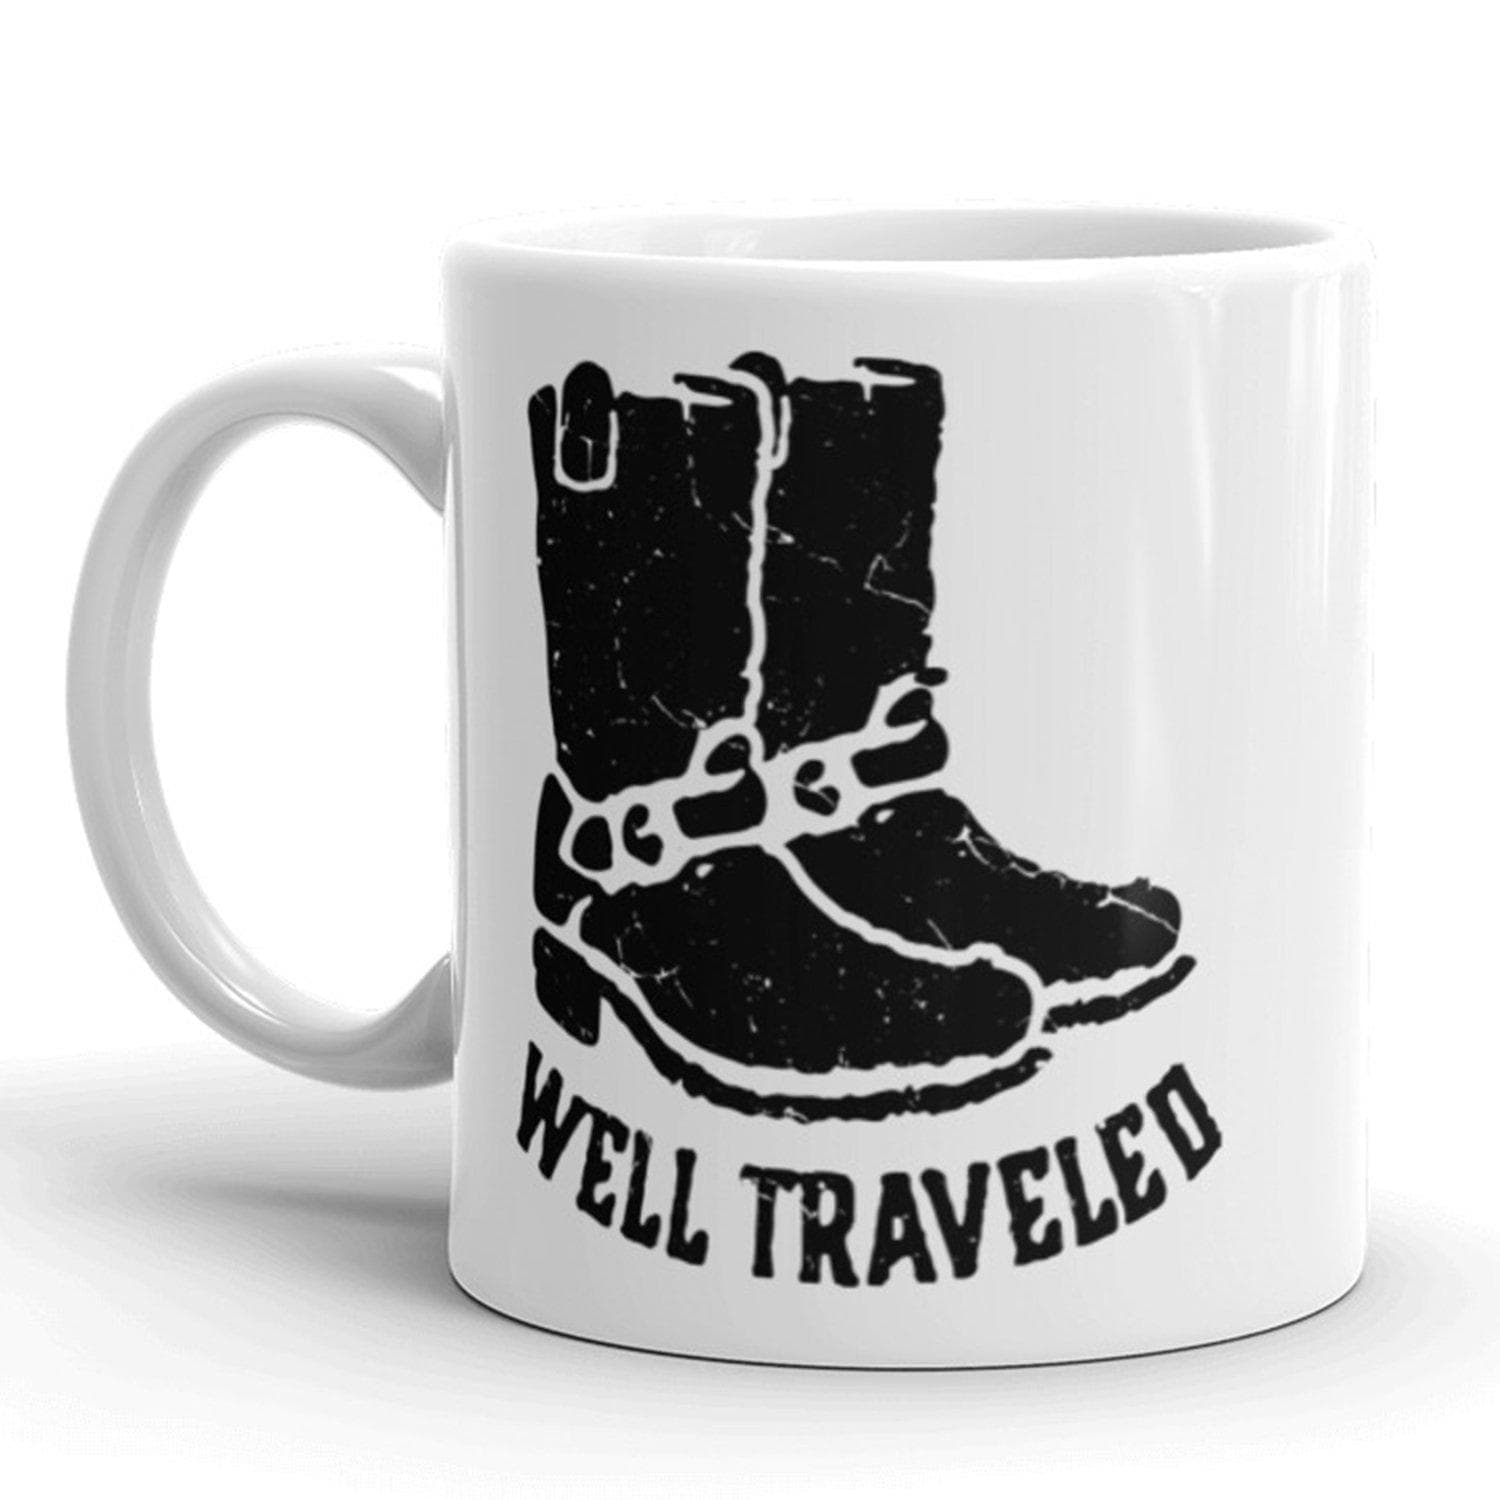 Well Traveled Mug - Crazy Dog T-Shirts